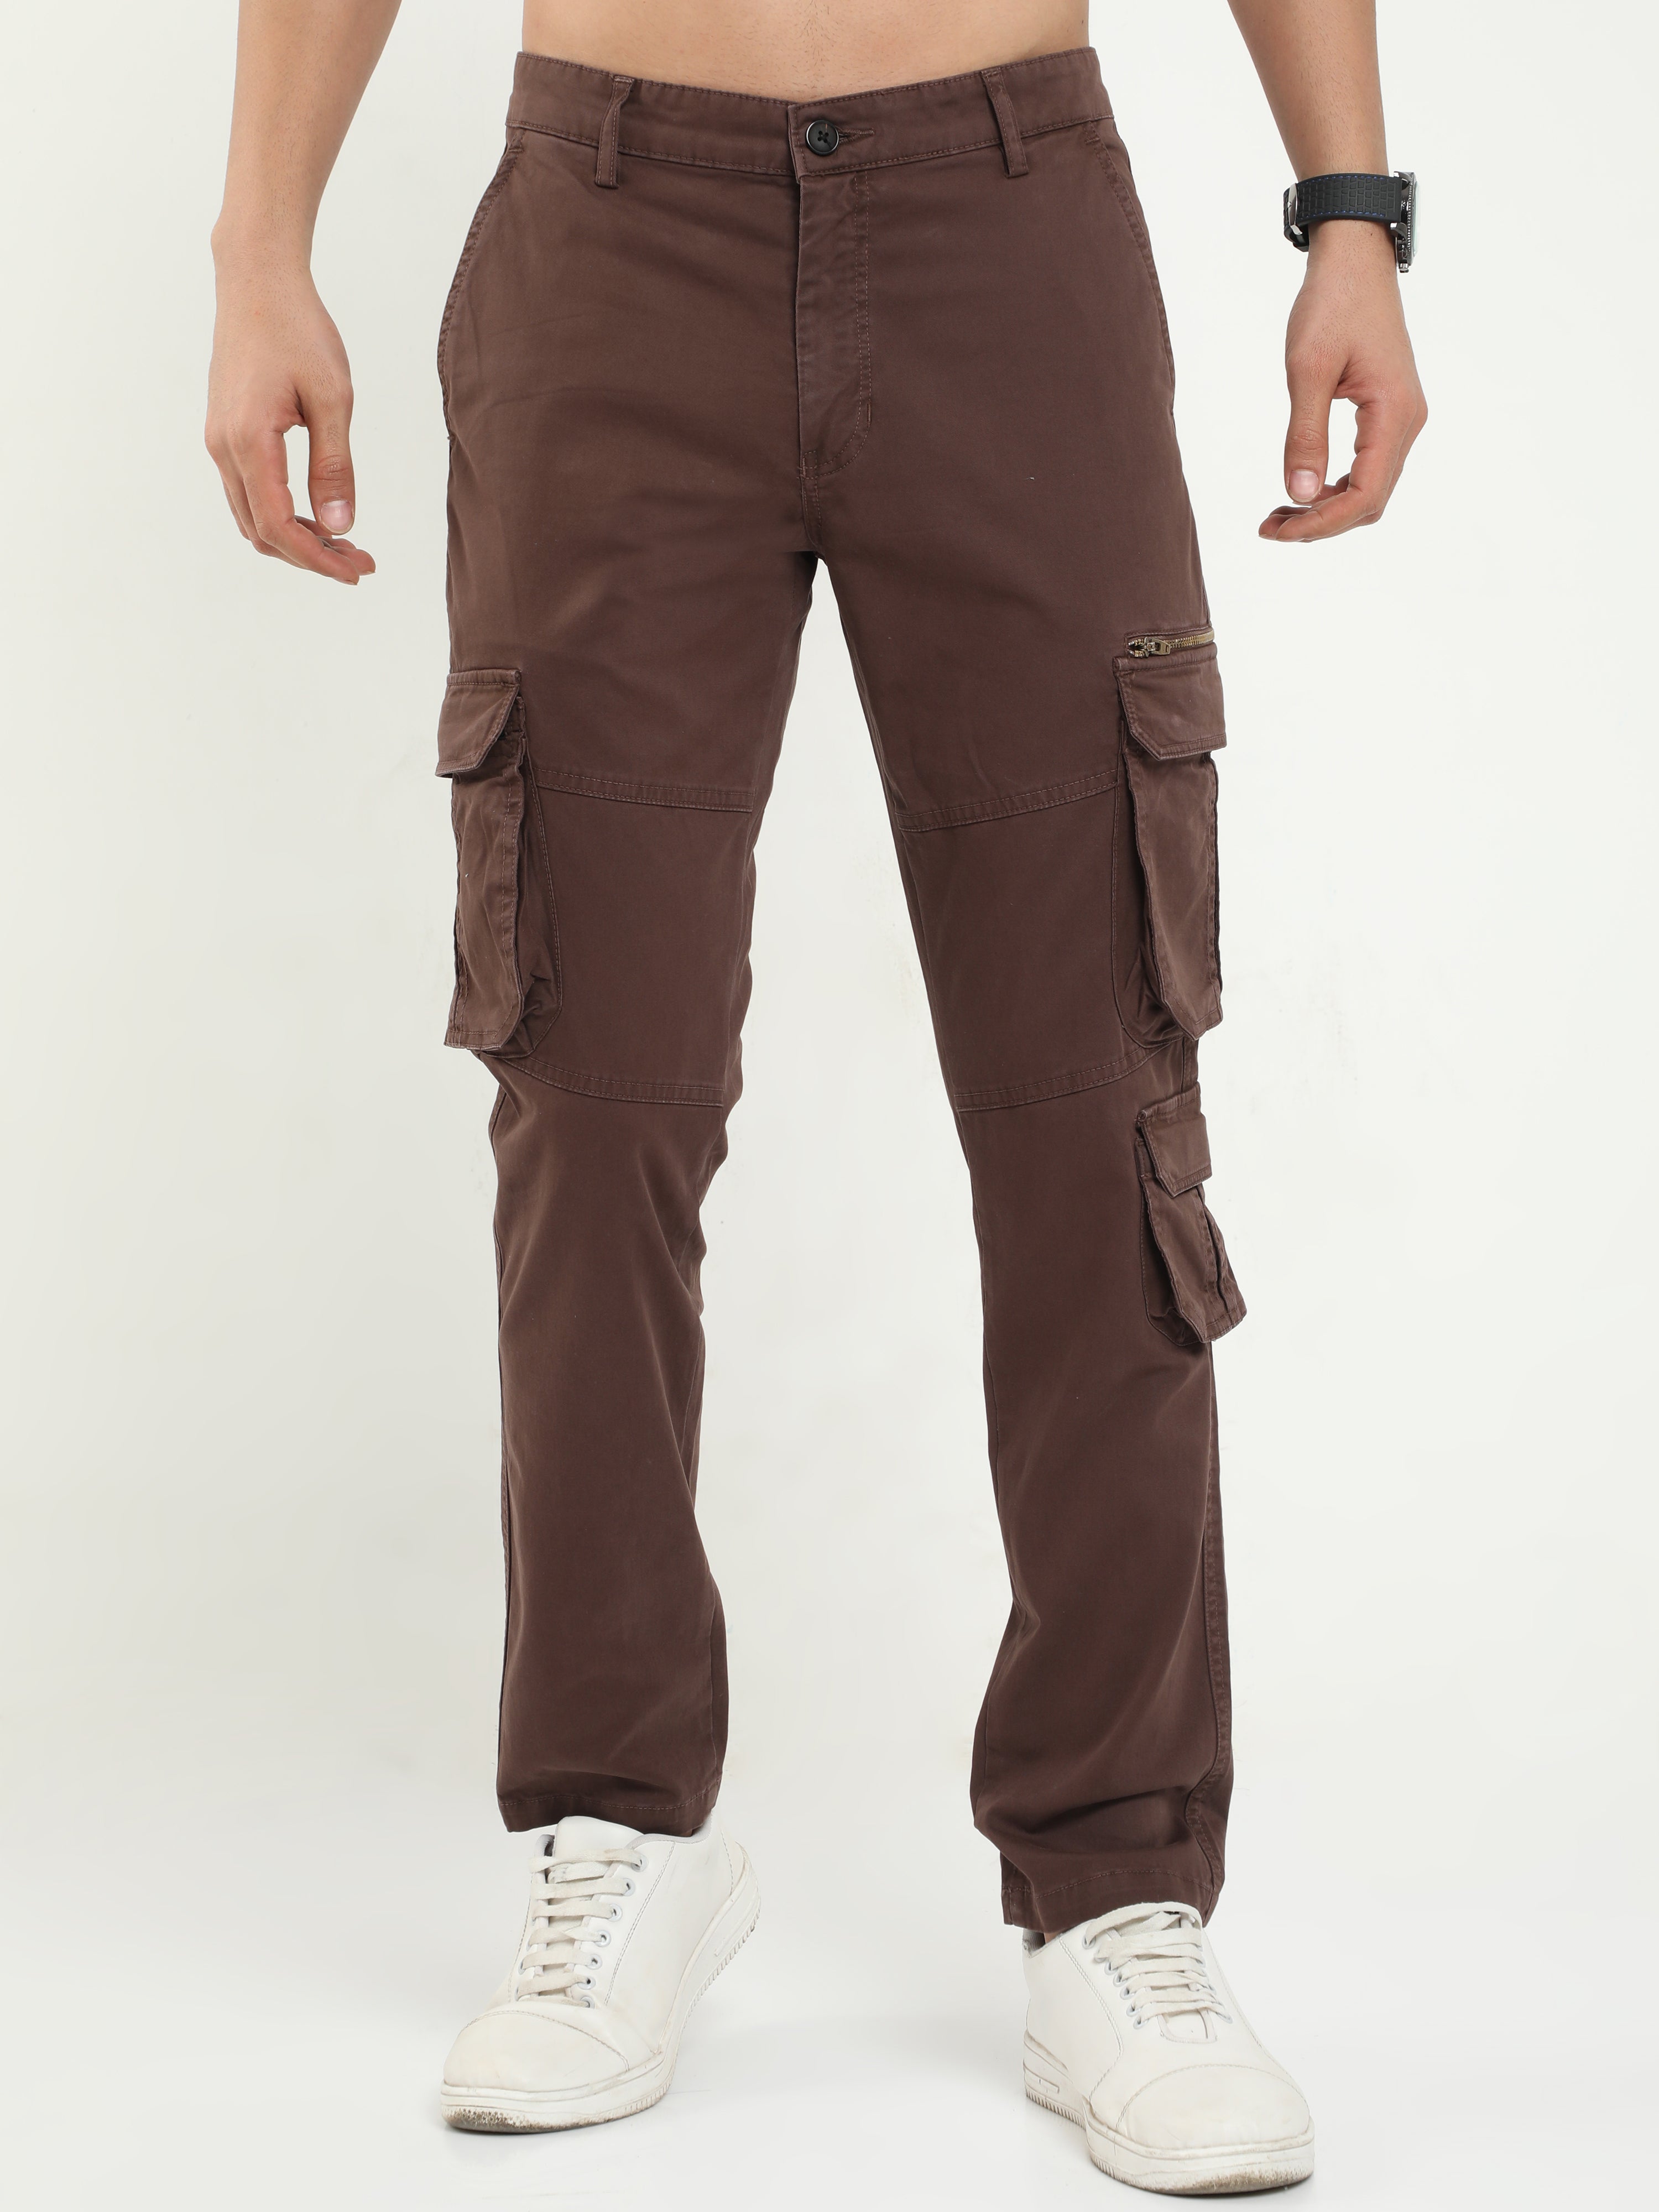 Buy Online|Spykar Men Brown Cotton Slim Fit Ankle Length Plain Trousers